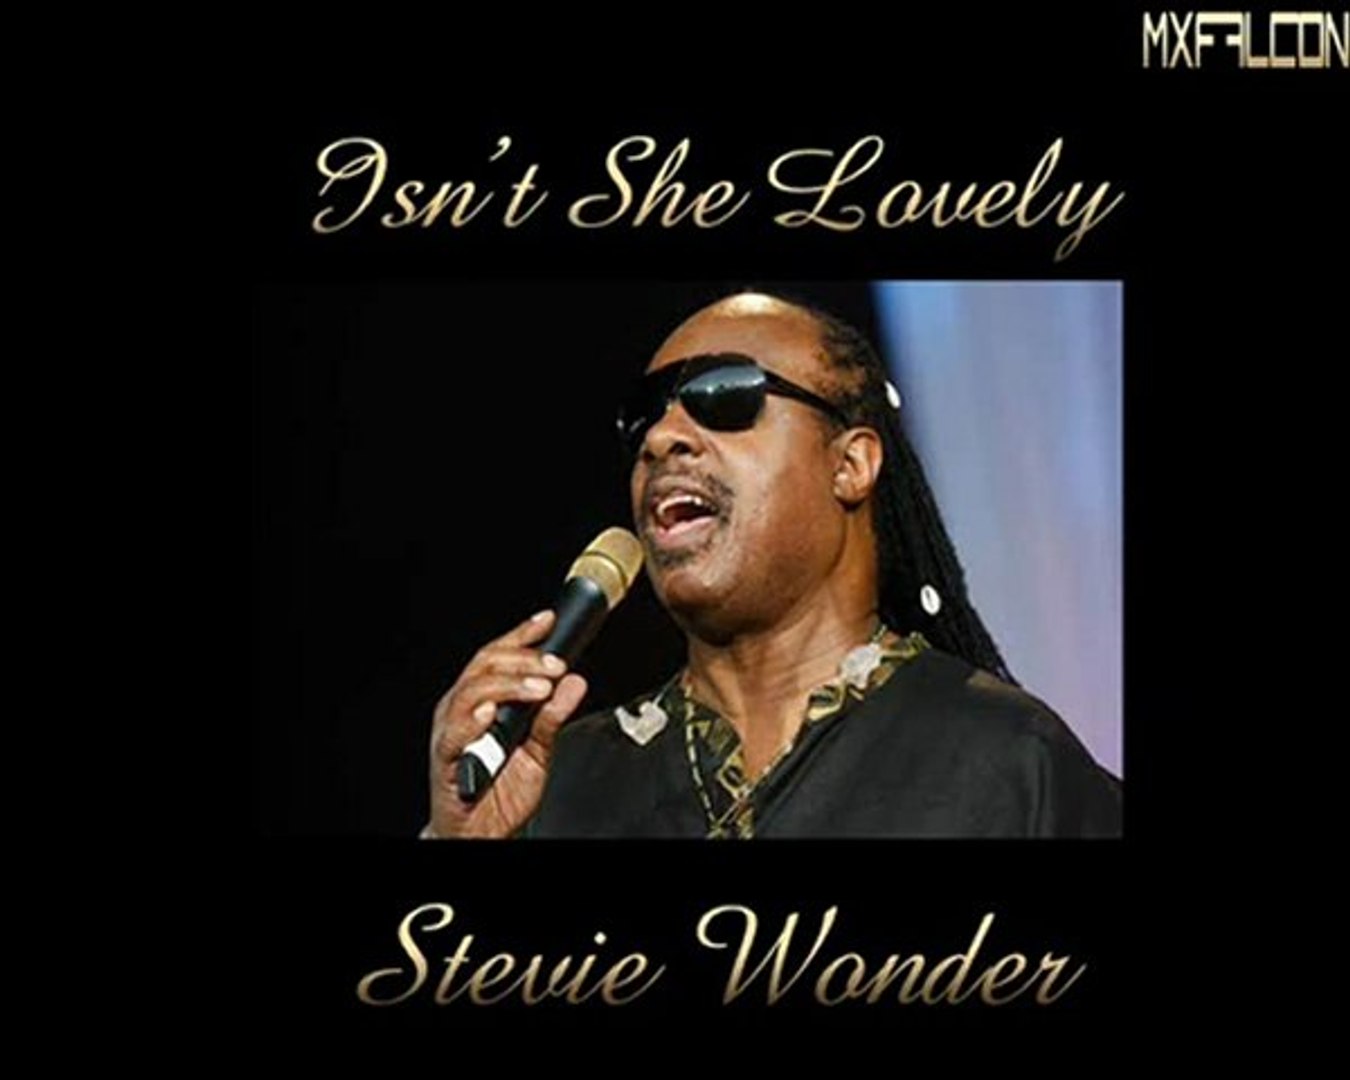 Stevie Wonder - Isn't she lovely - legendas pt - tradução 